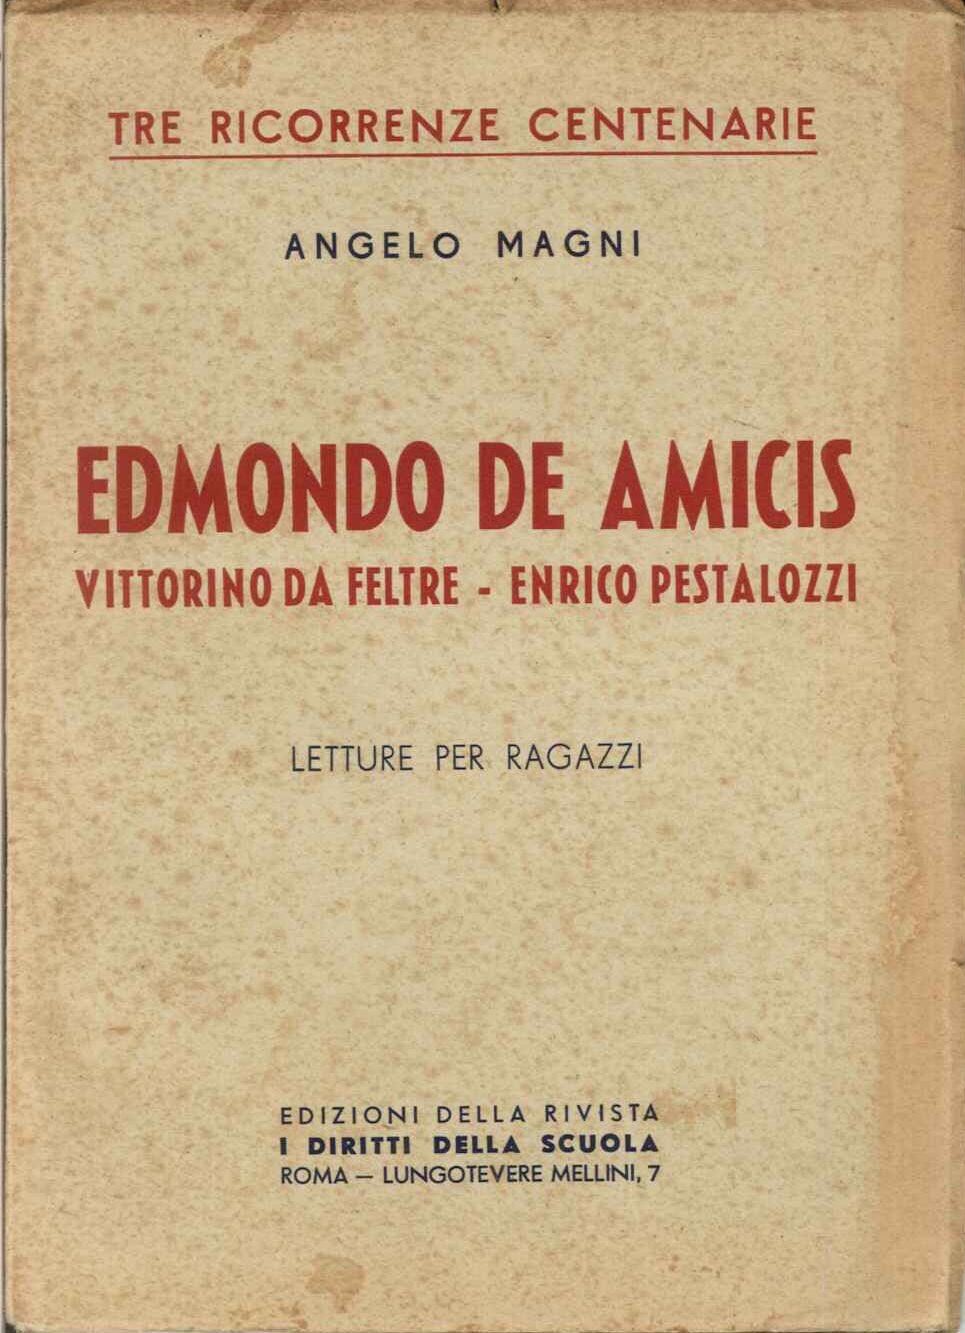 Edmondo De Amicis - Vittorino da Feltre - Enrico pestalozzi.